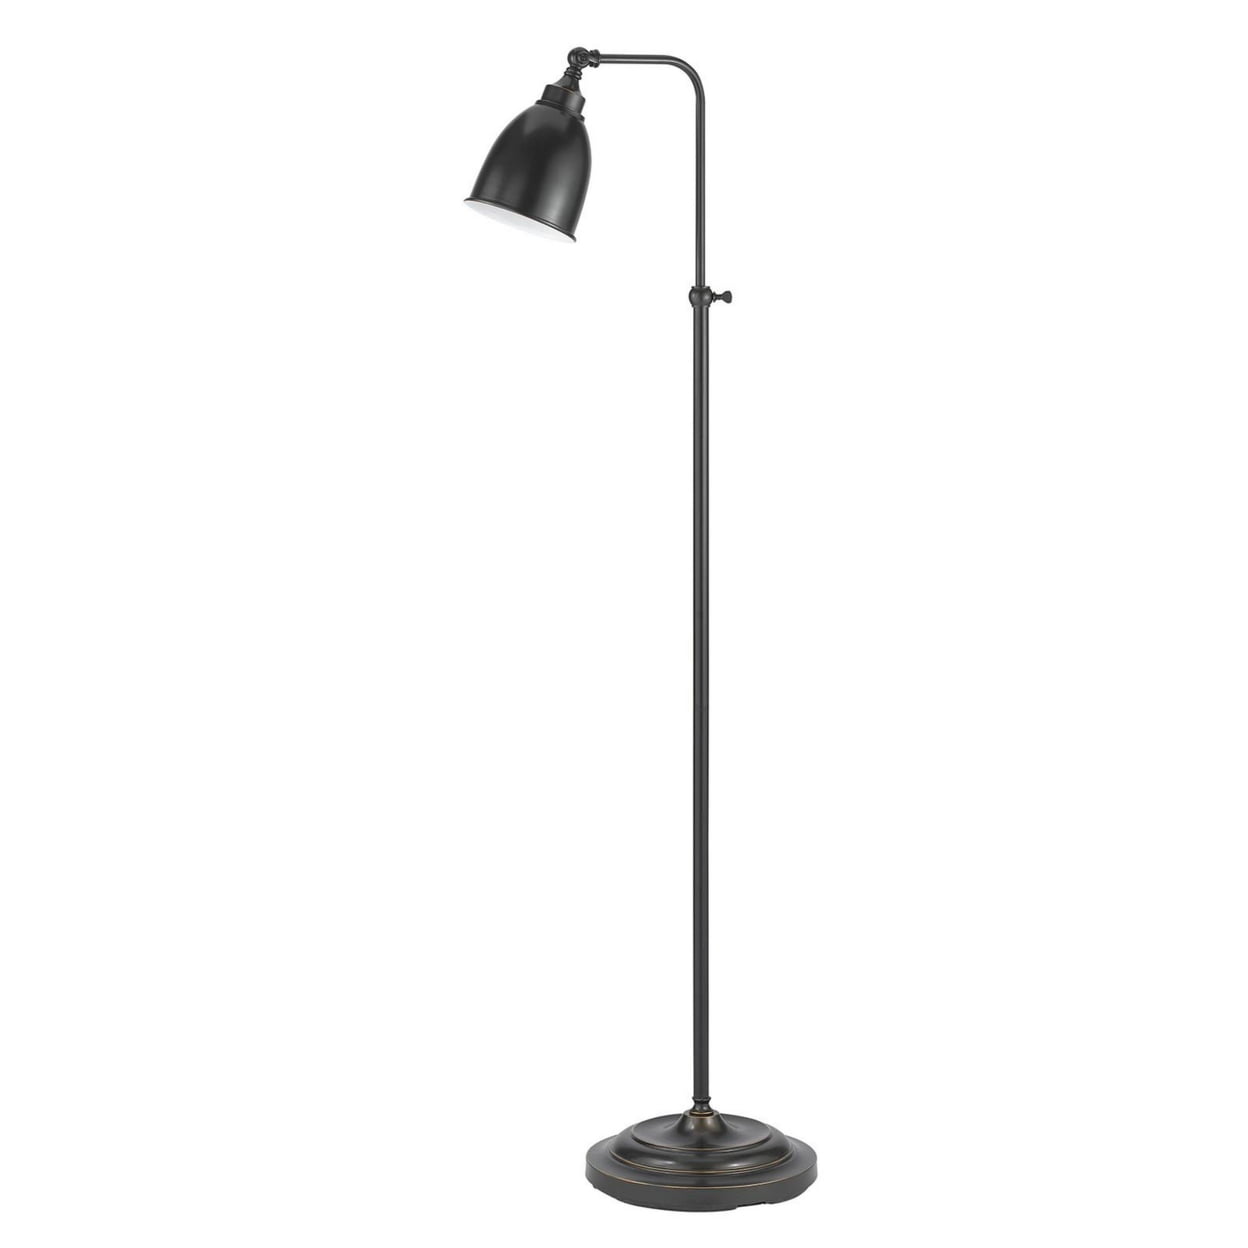 Picture of Benjara BM225100 62 in. Metal Round Floor Lamp with Adjustable Pole, Dark Bronze